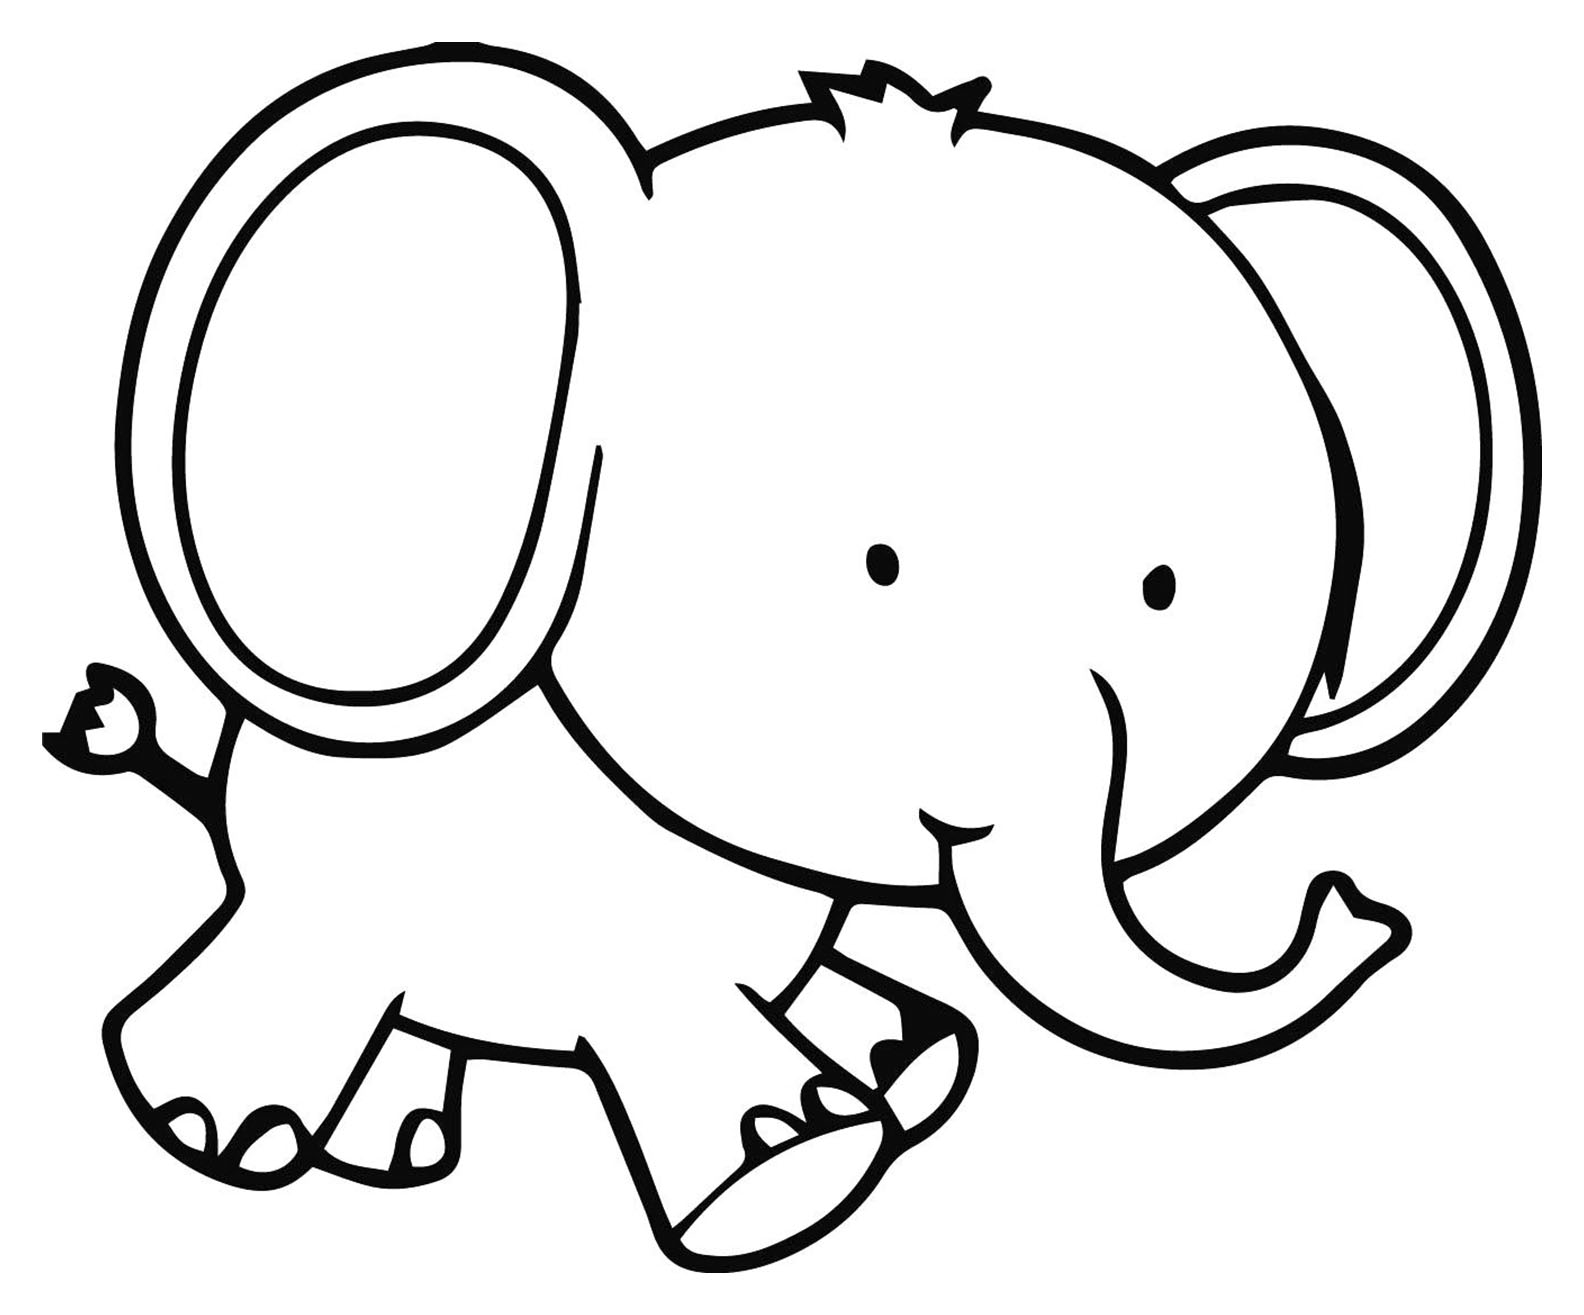 Desenho de elefantes para colorir, fácil para as crianças